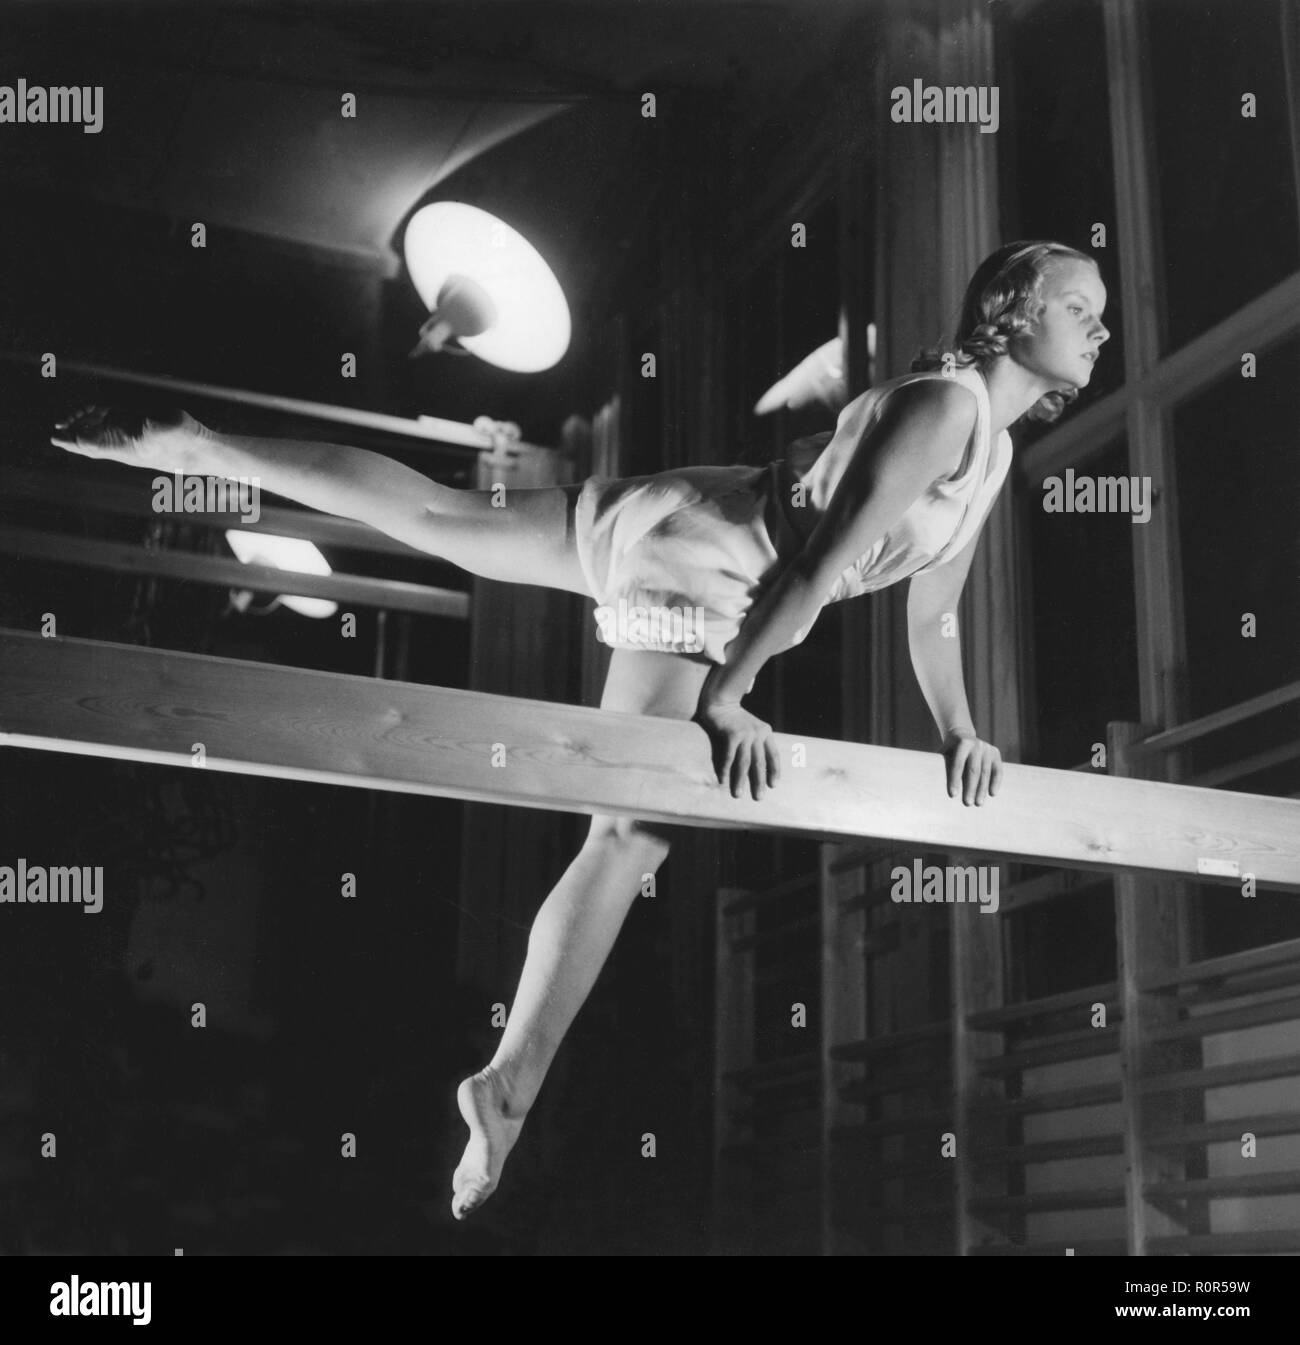 Turnerin in den 1940er. Olympiameisterin Göta Pettersson, 1926-1993. Abbildung während der Schulung 1945. Schweden Kristoffersson Ref. M105-6 Stockfoto